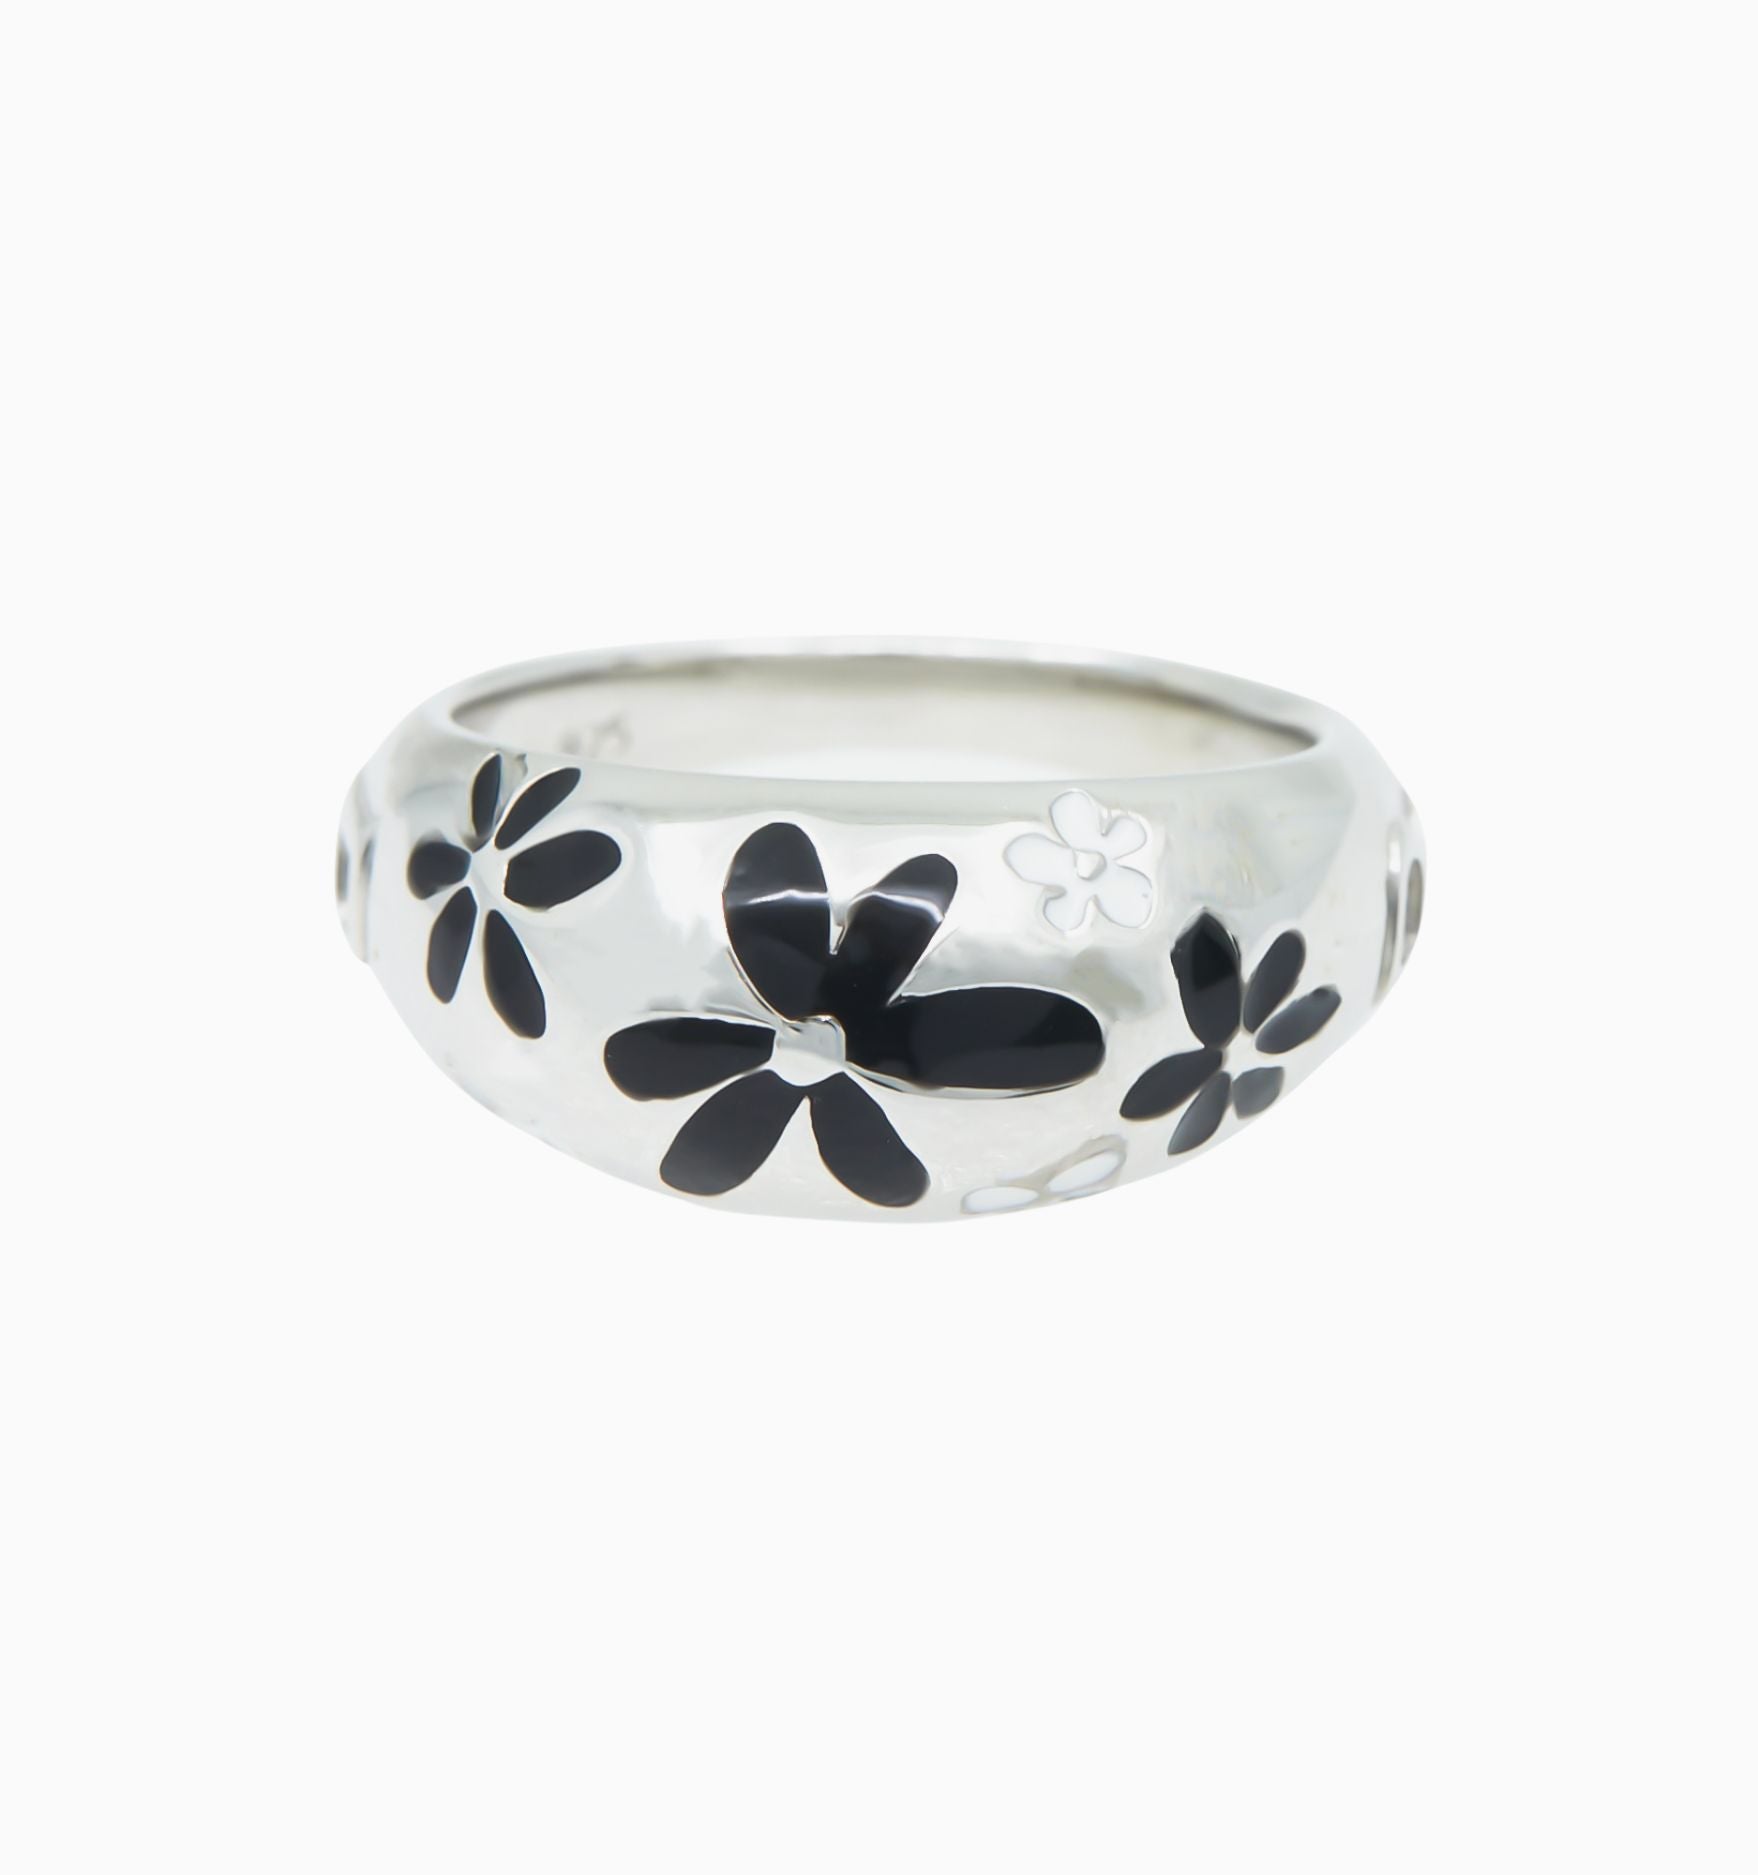 Flower Ring - Black And White